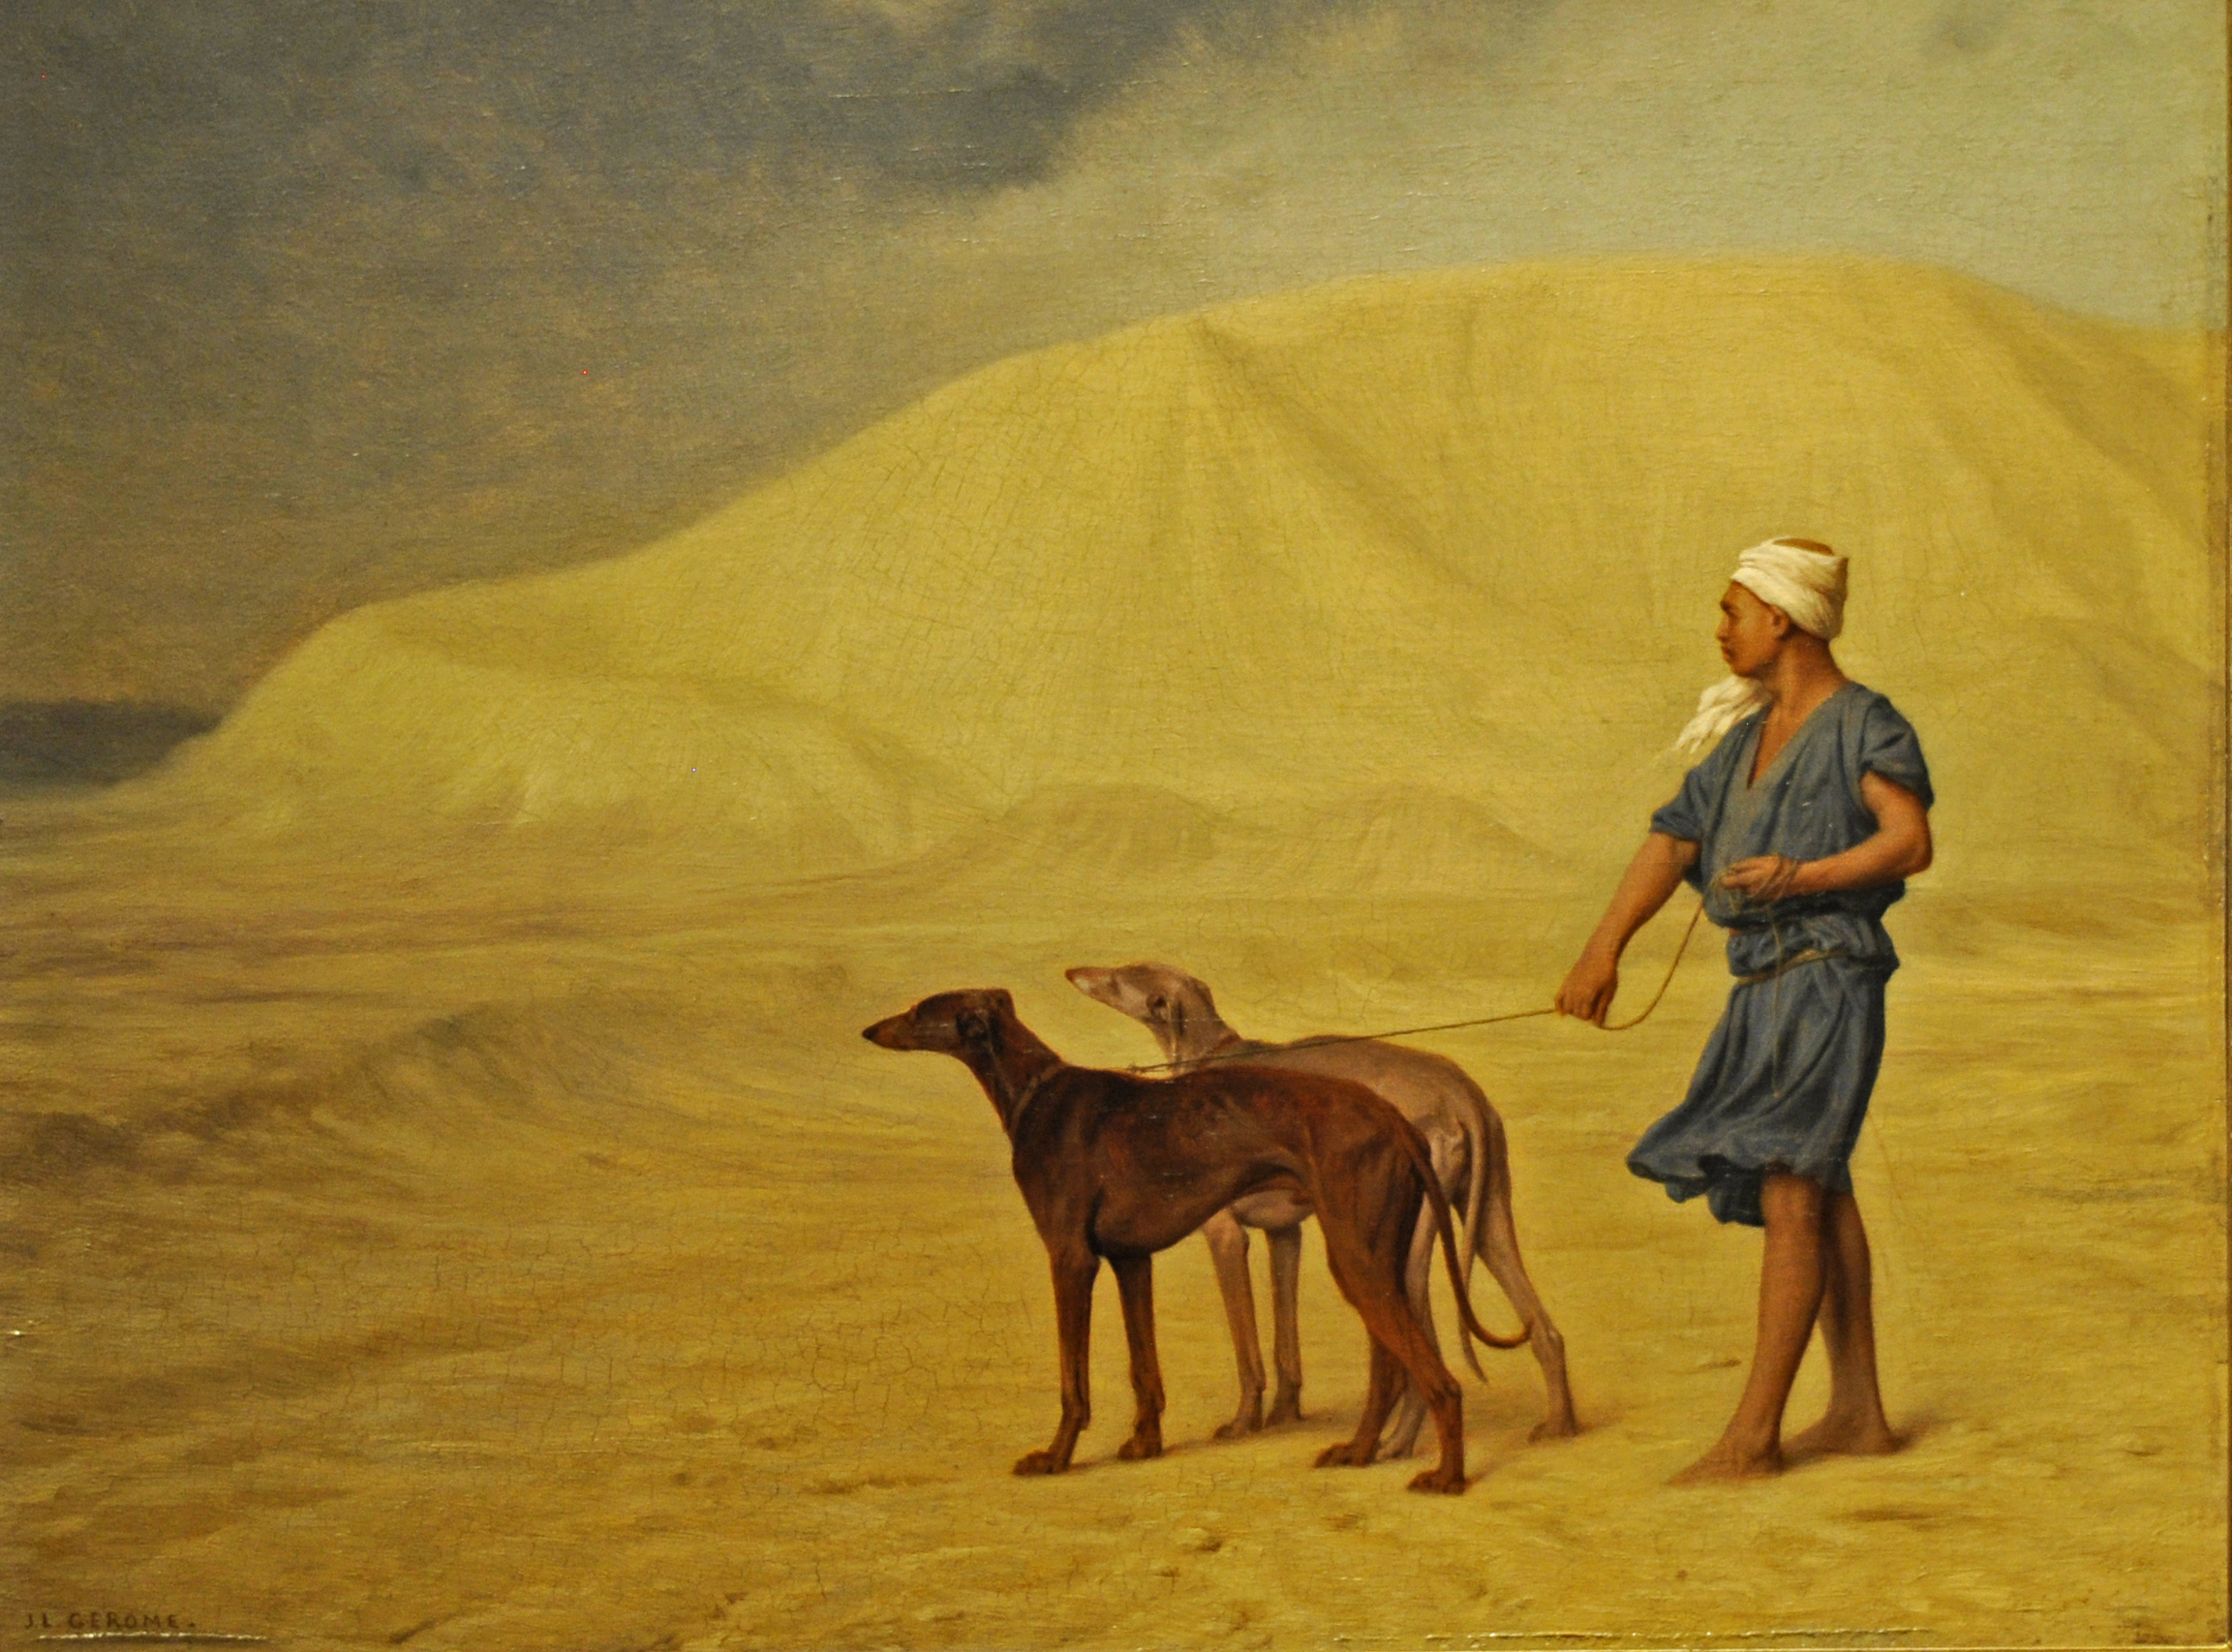 En el desierto by Jean-Léon Gérôme - 1867 - 21 x 26.8 cm Museo Walters